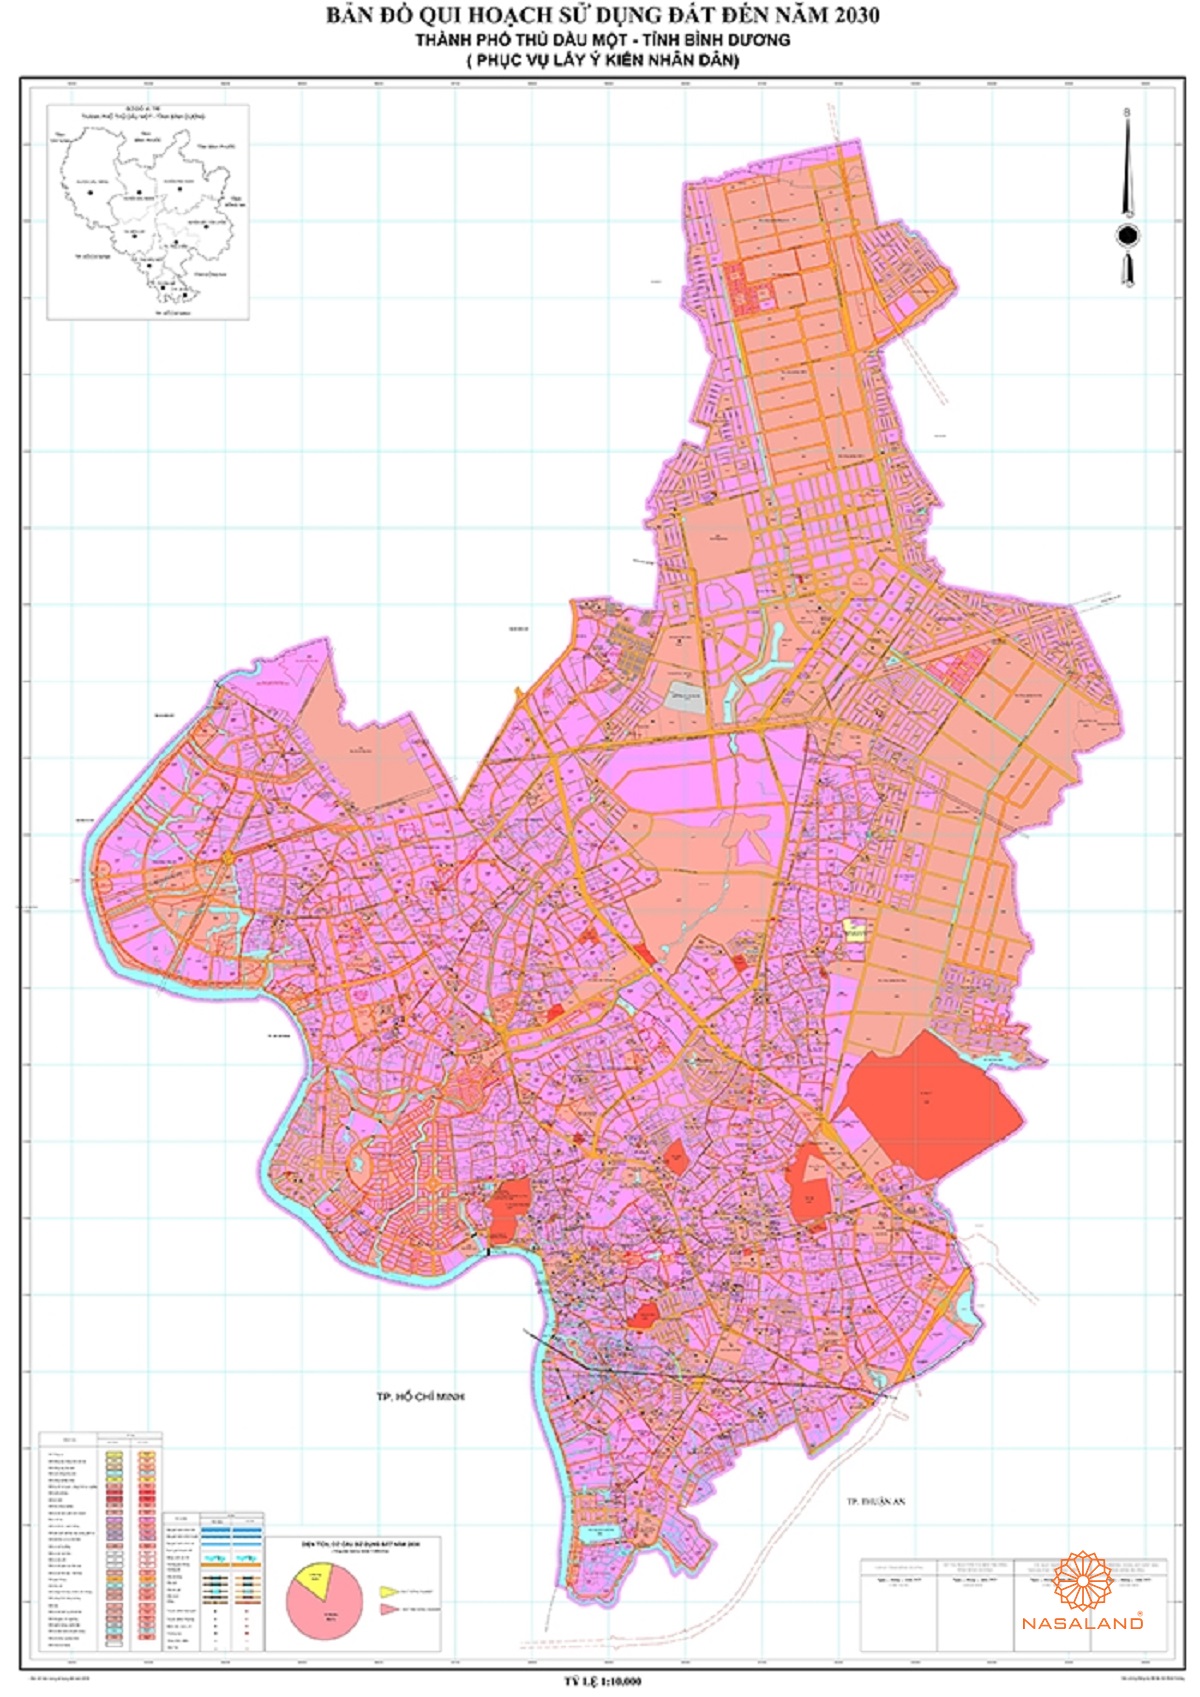 Quy hoạch sử dụng đất Thành phố Thủ Dầu Một thể hiện trên bản đồ quy hoạch phân khu tỷ lệ 1/2000 của Tỉnh Bình Dương